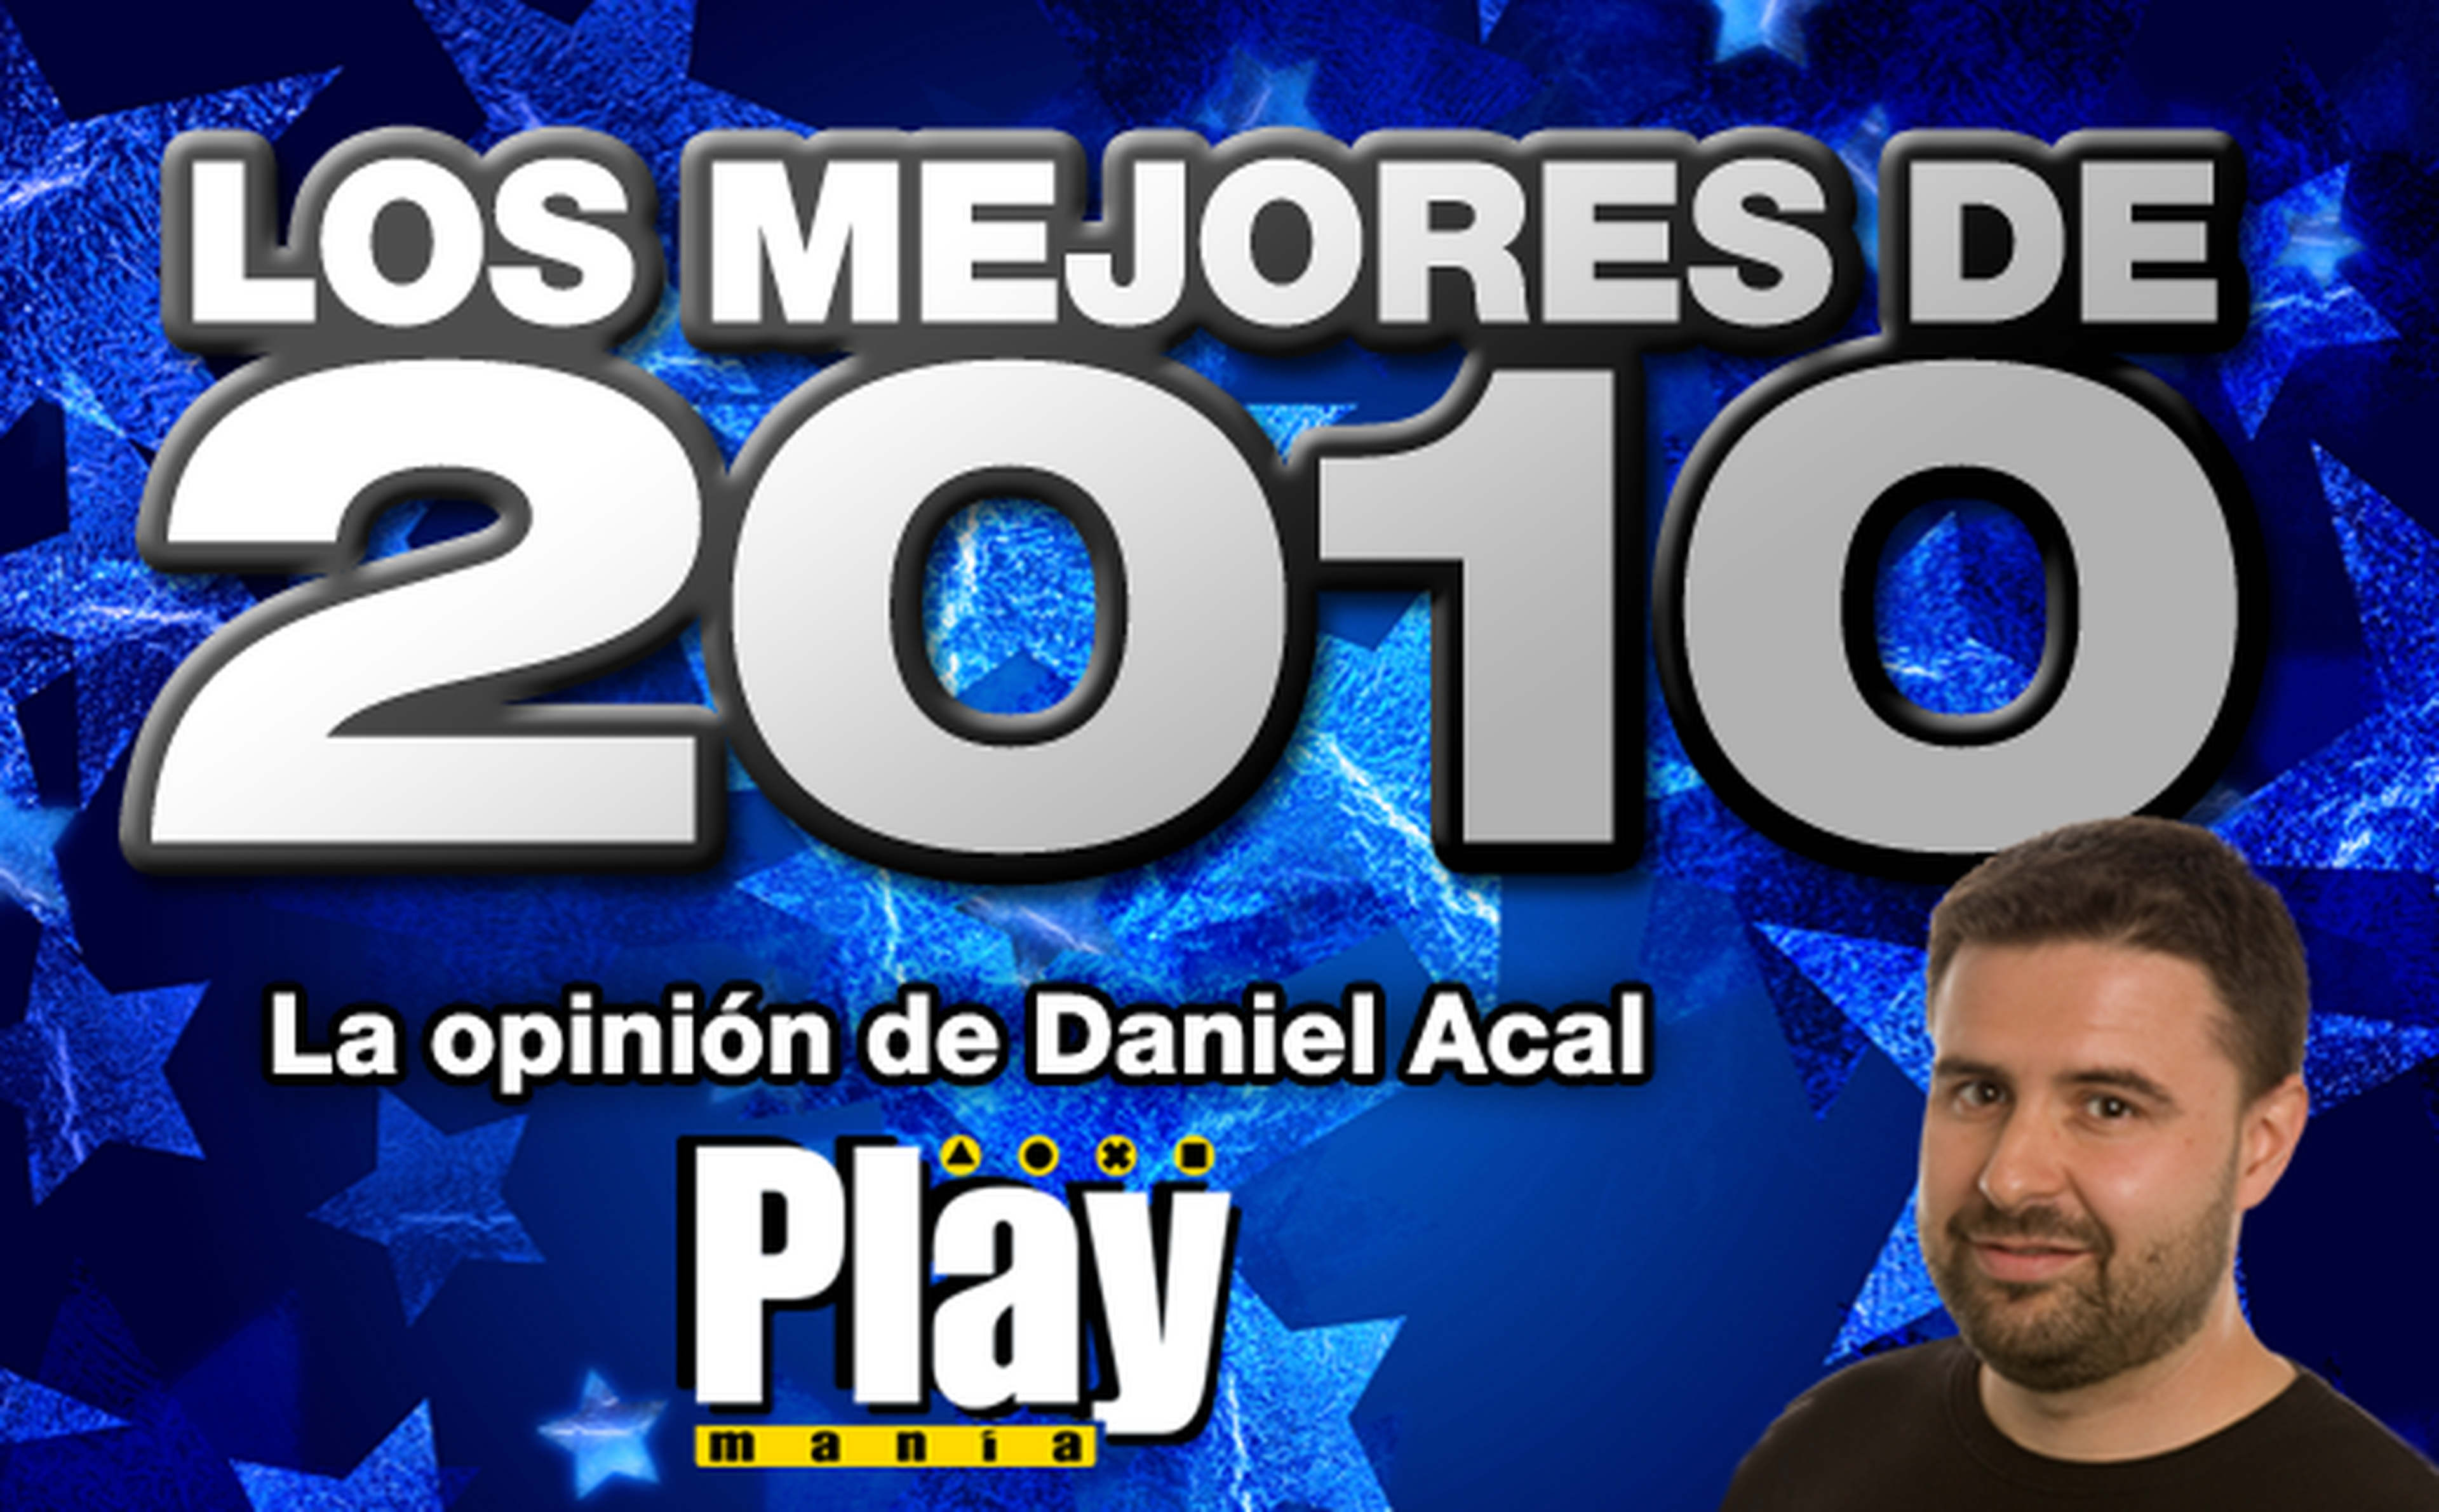 Los mejores de 2010: Dani Acal